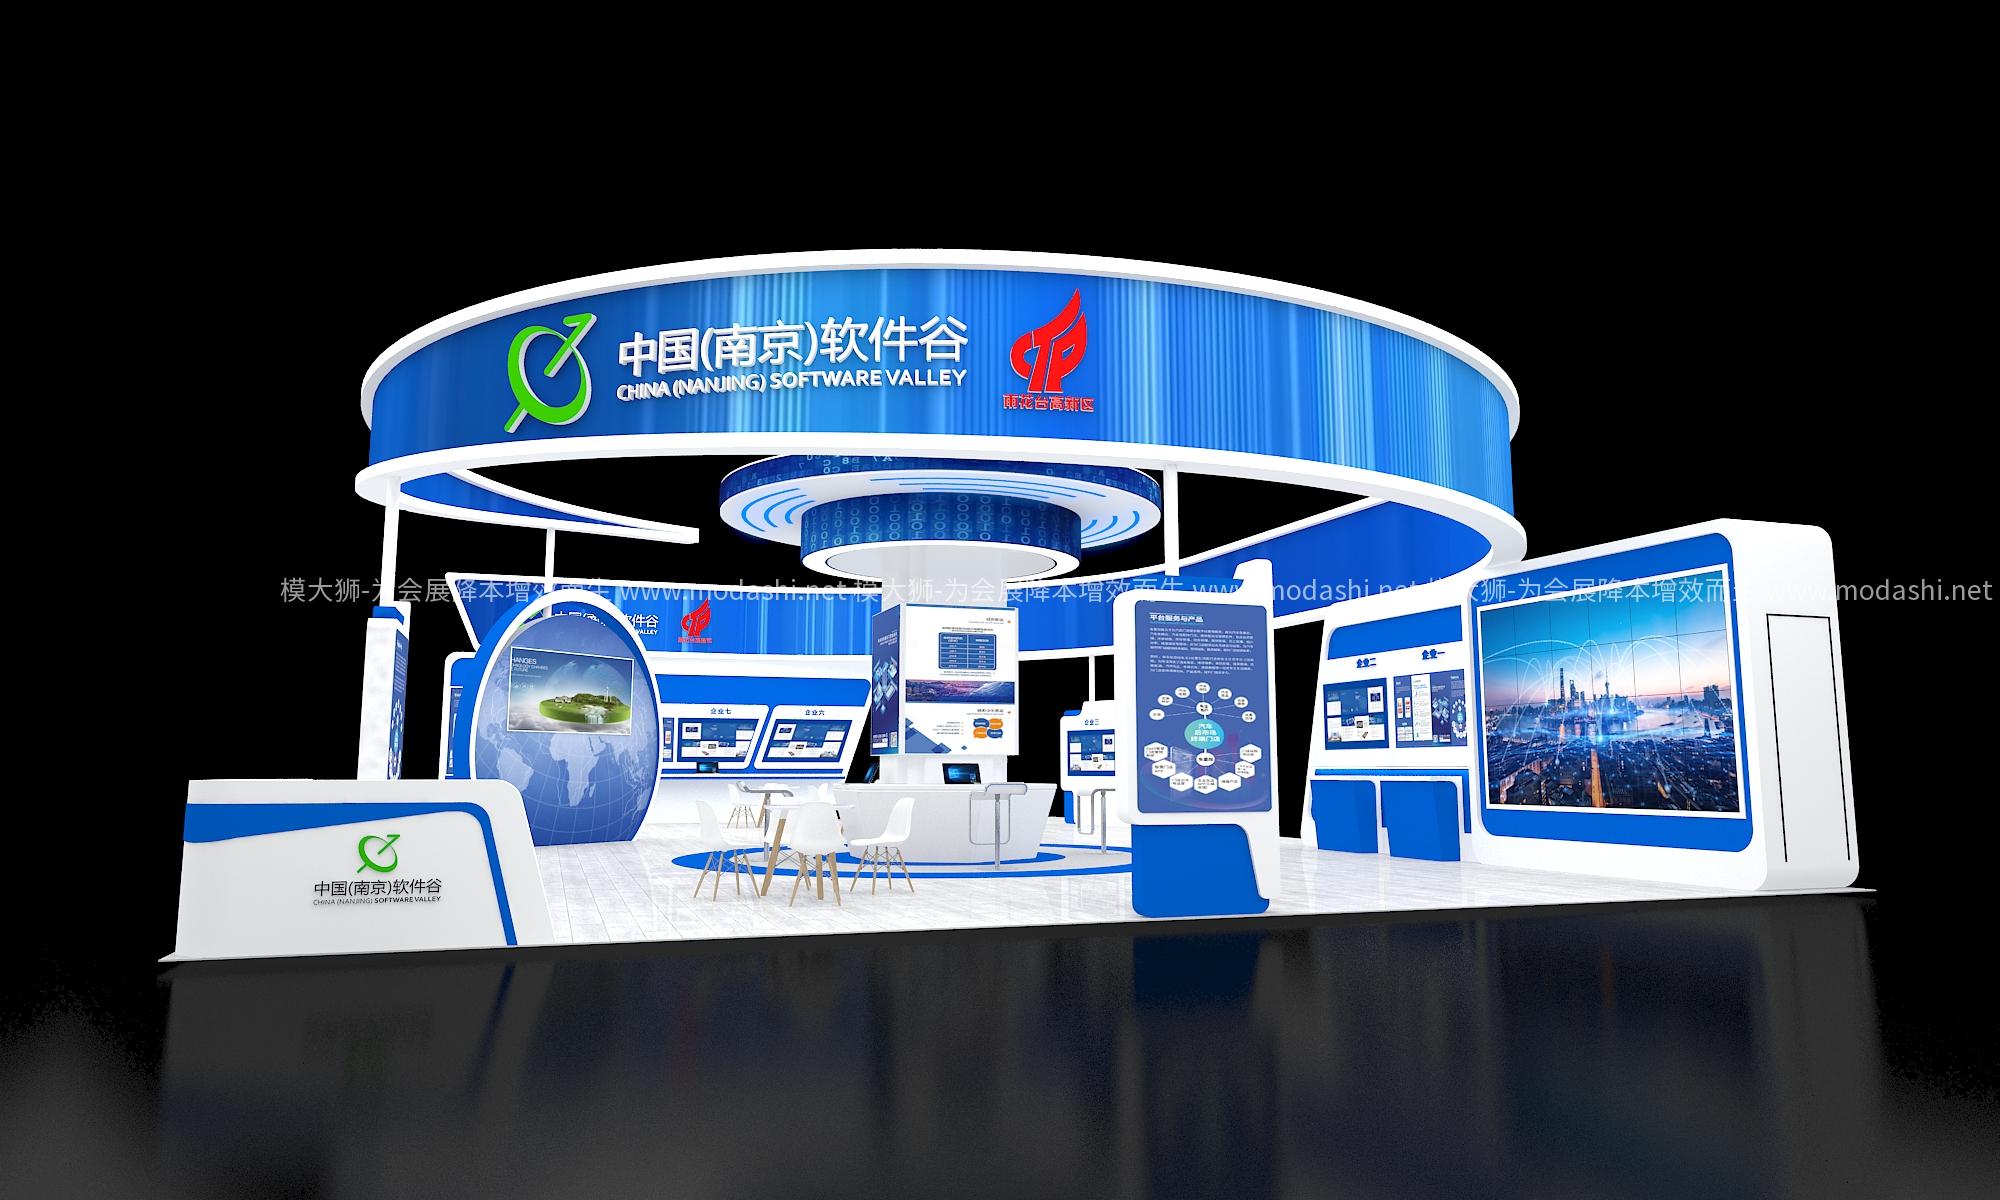 中国南京软件谷展台模型